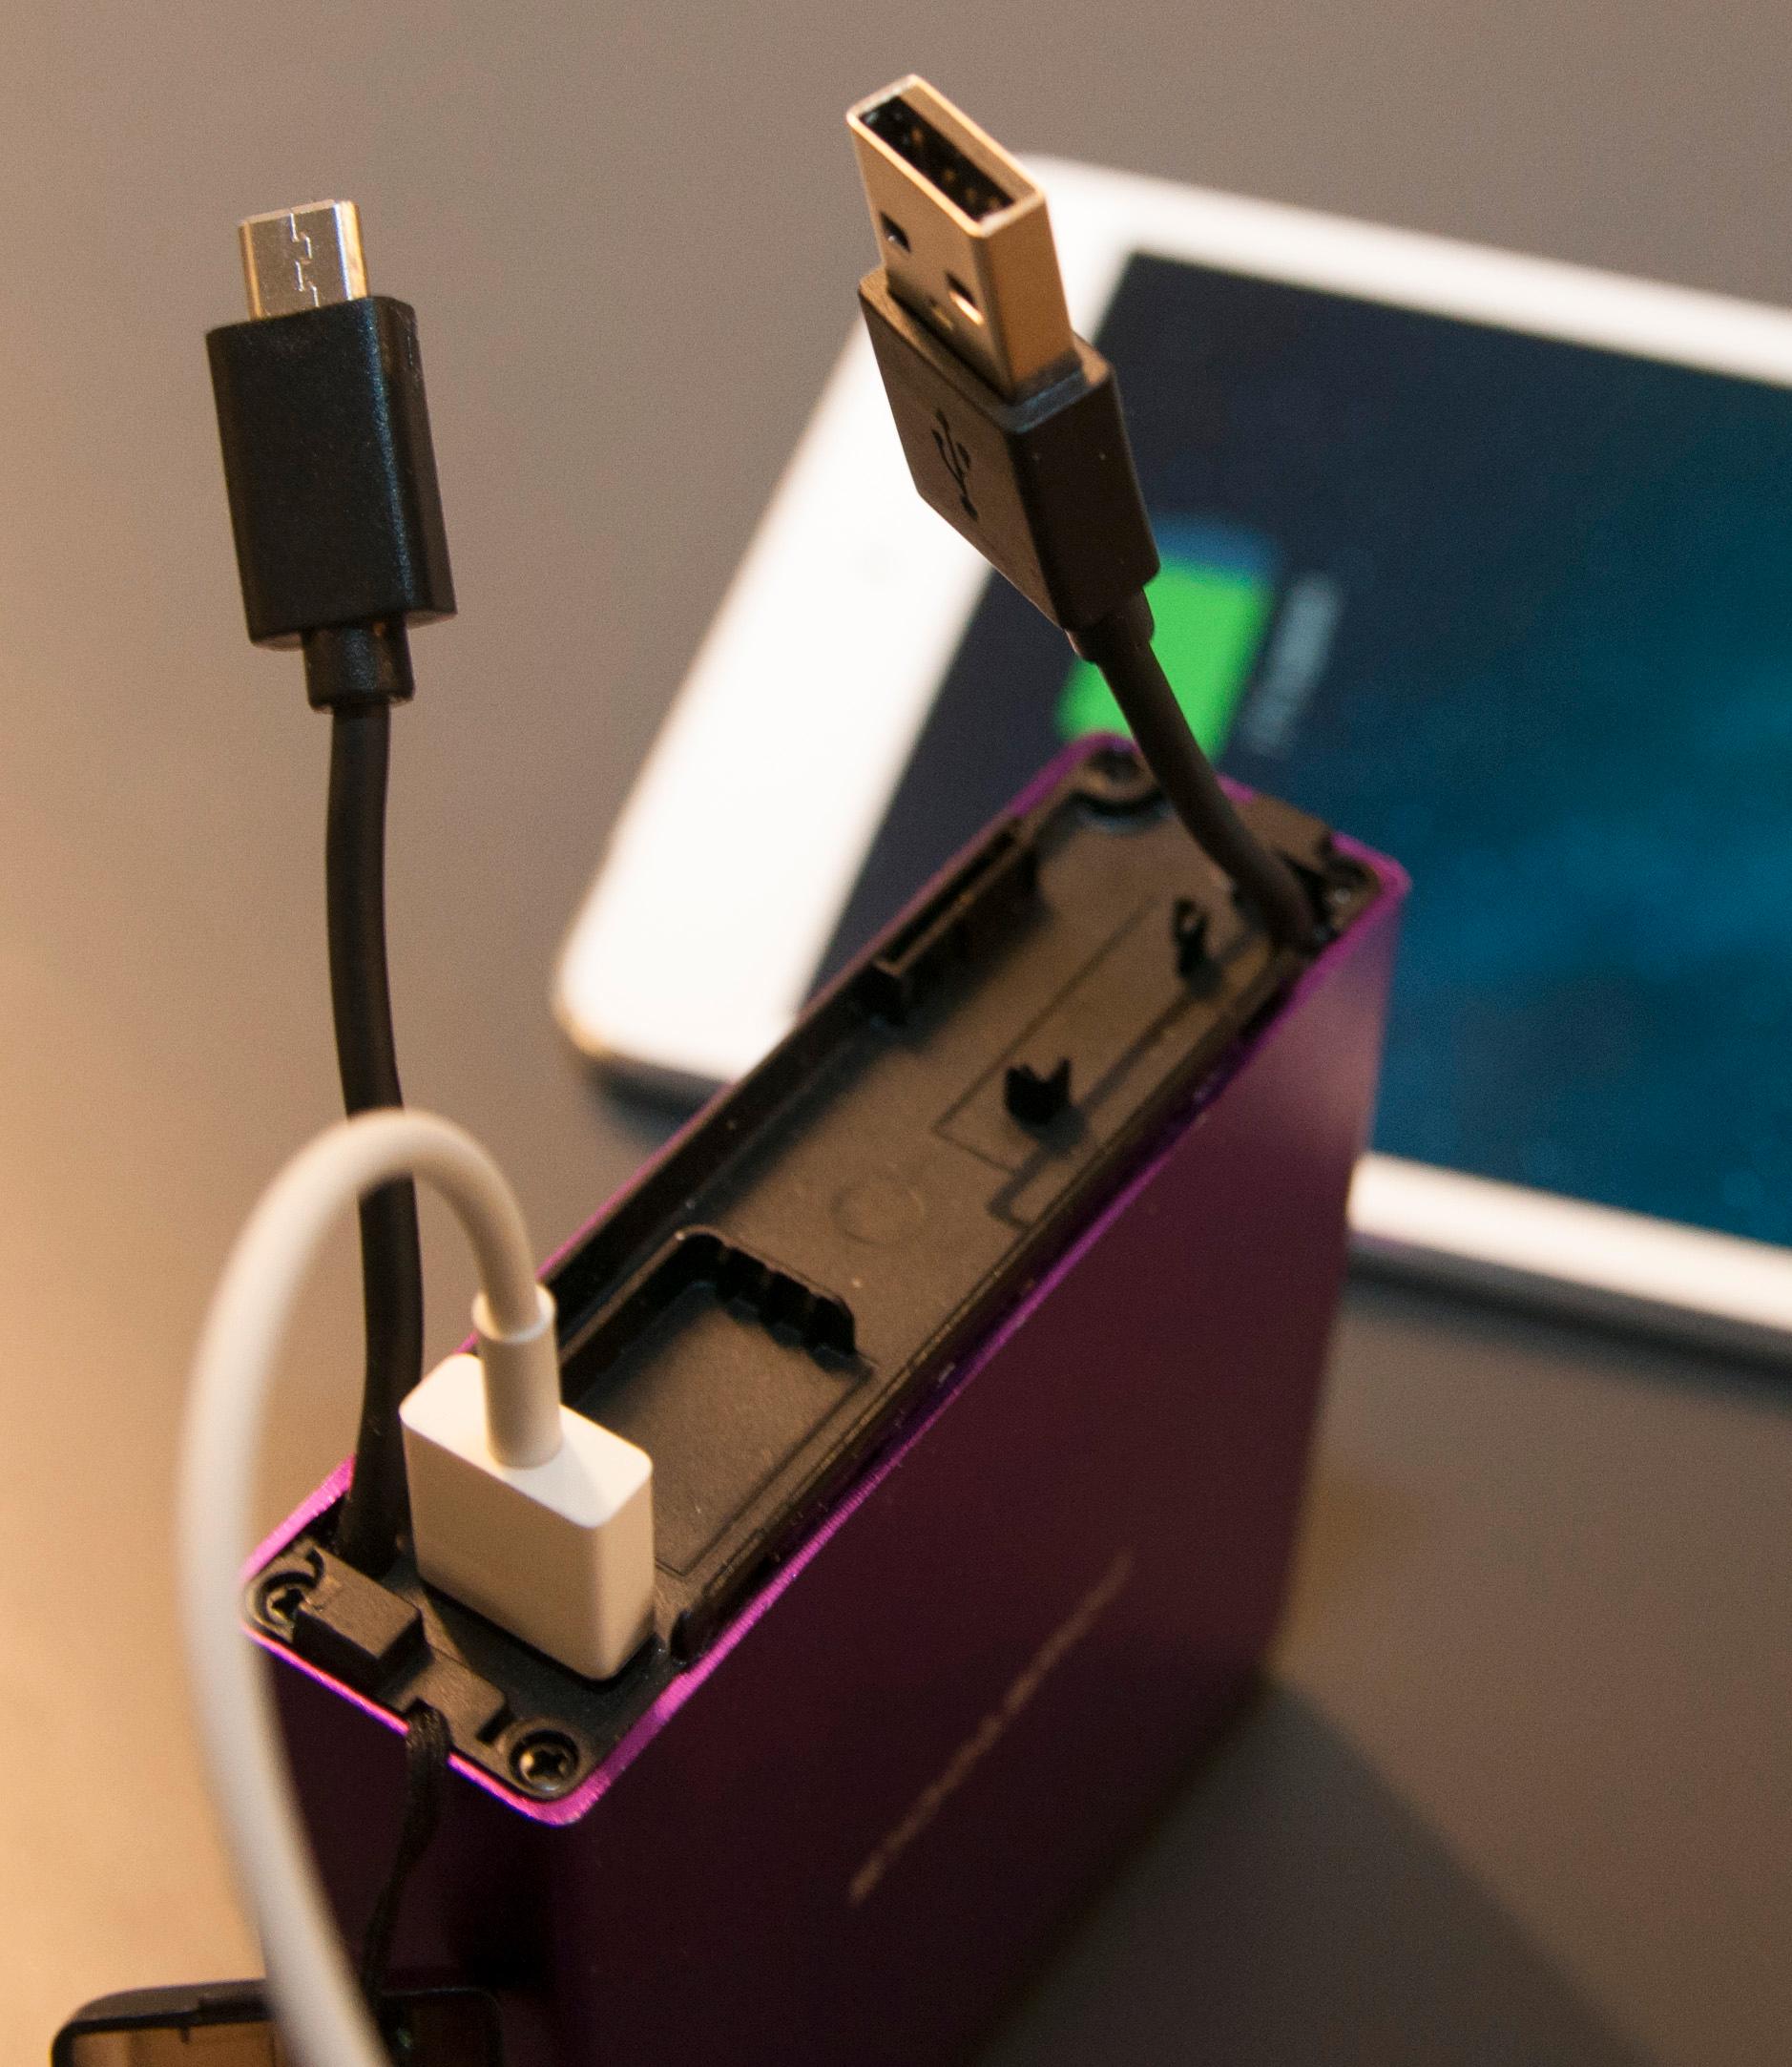 Hvis du bare har utstyr med Micro-USB-kontakt, klarer du deg med ledningstumpene som stikker ut av selve batteriet.Foto: Finn Jarle Kvalheim, Amobil.no